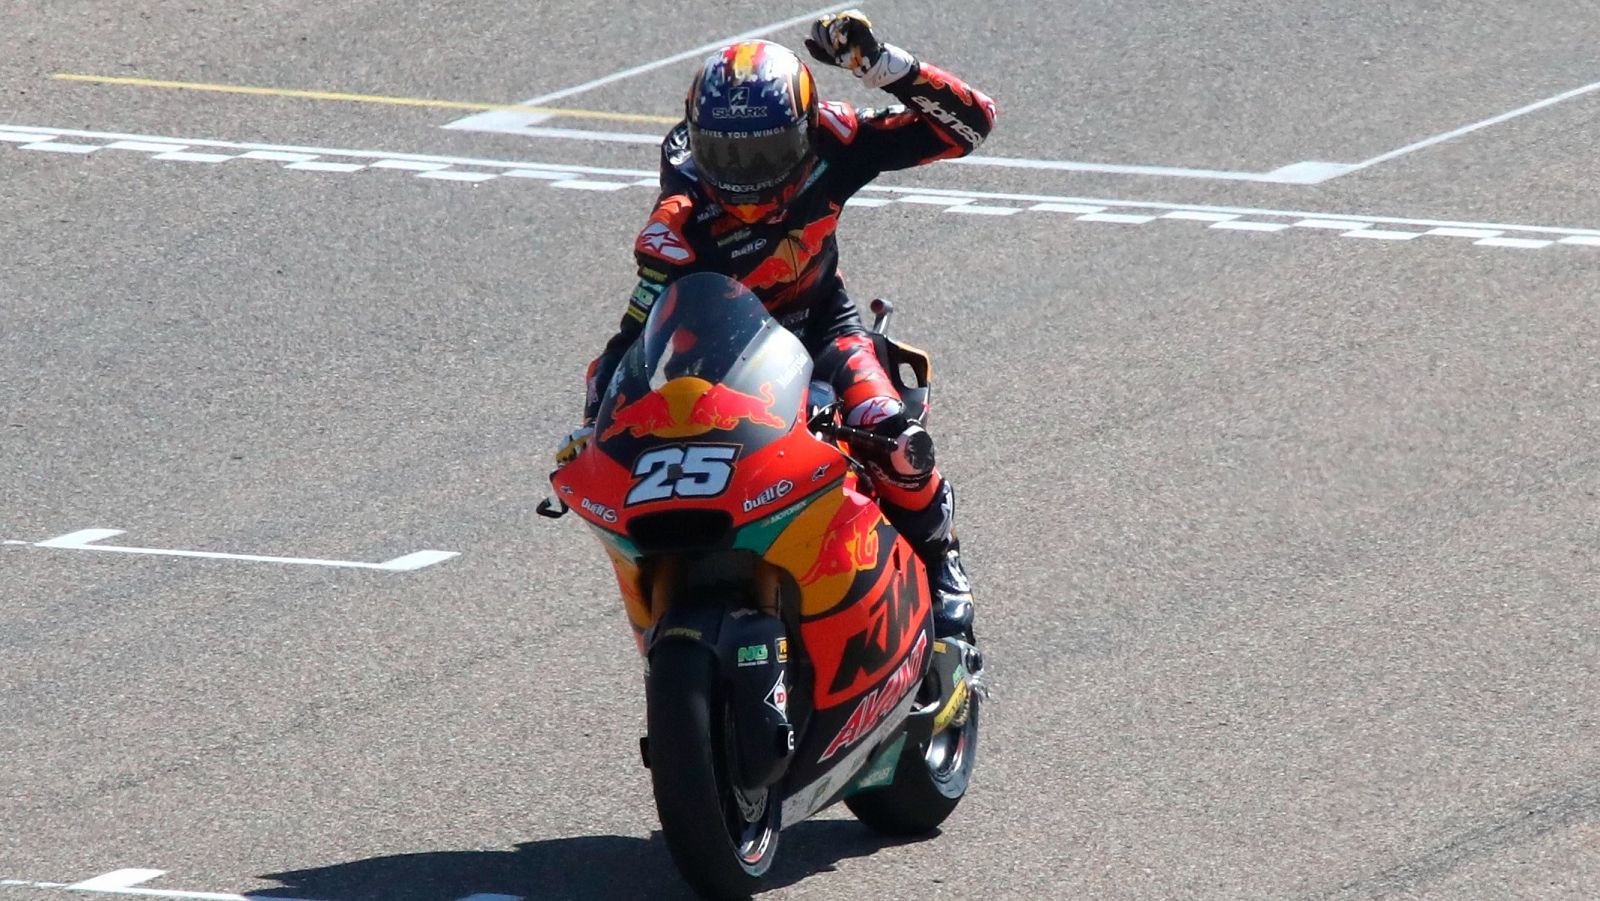 El piloto español Raúl Fernández (Kalex) se adjudica la victoria en la carrera de Moto2 del Gran Premio de Aragón.